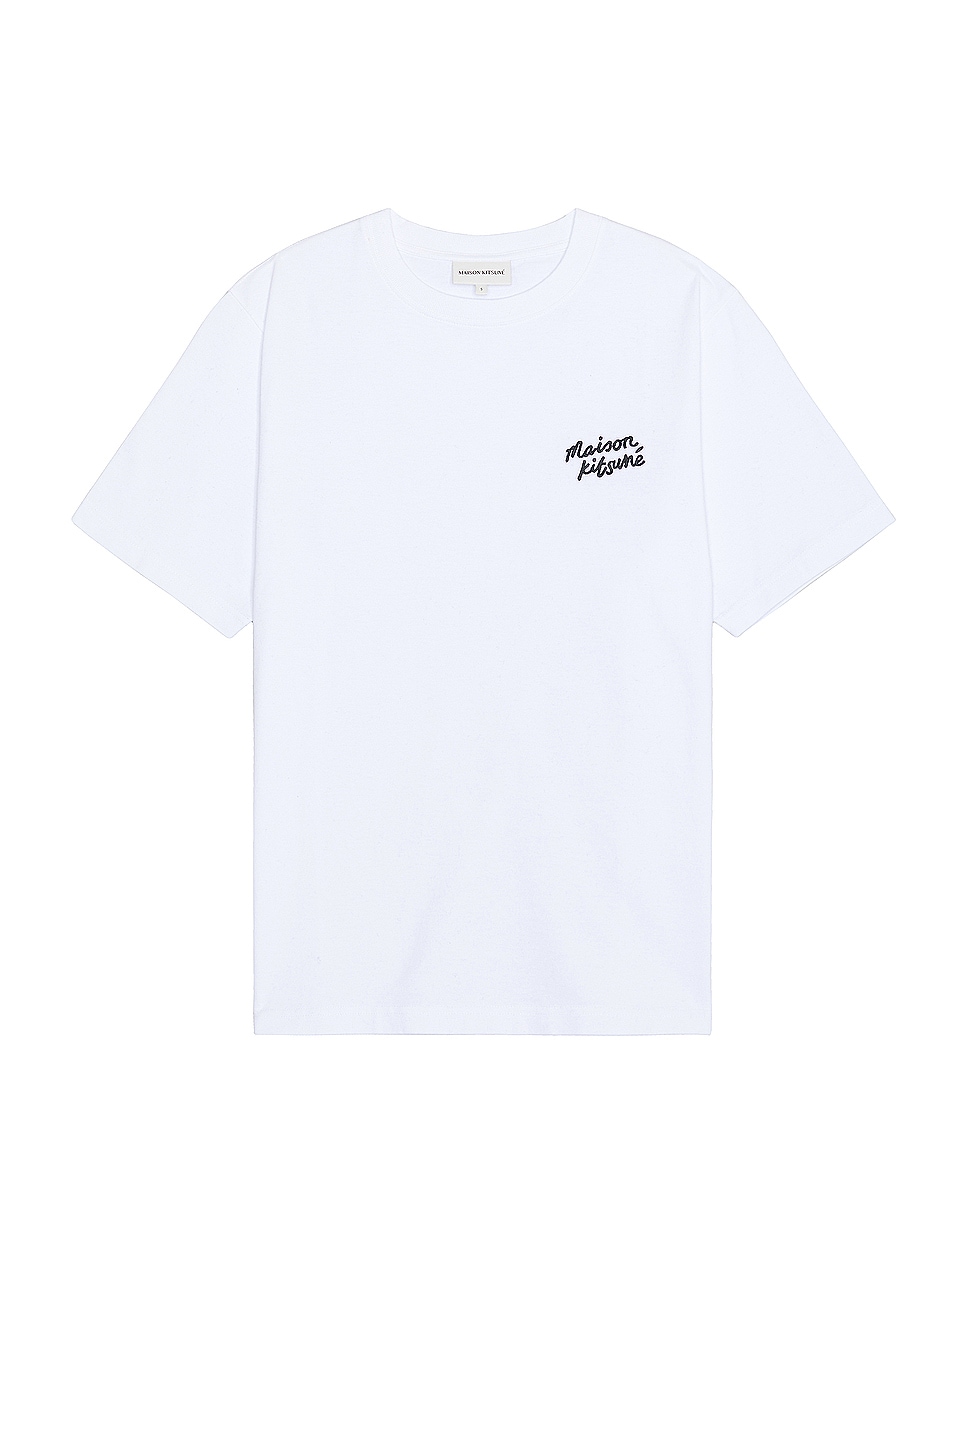 Image 1 of Maison Kitsune Handwriting Comfort T-shirt in White & Black